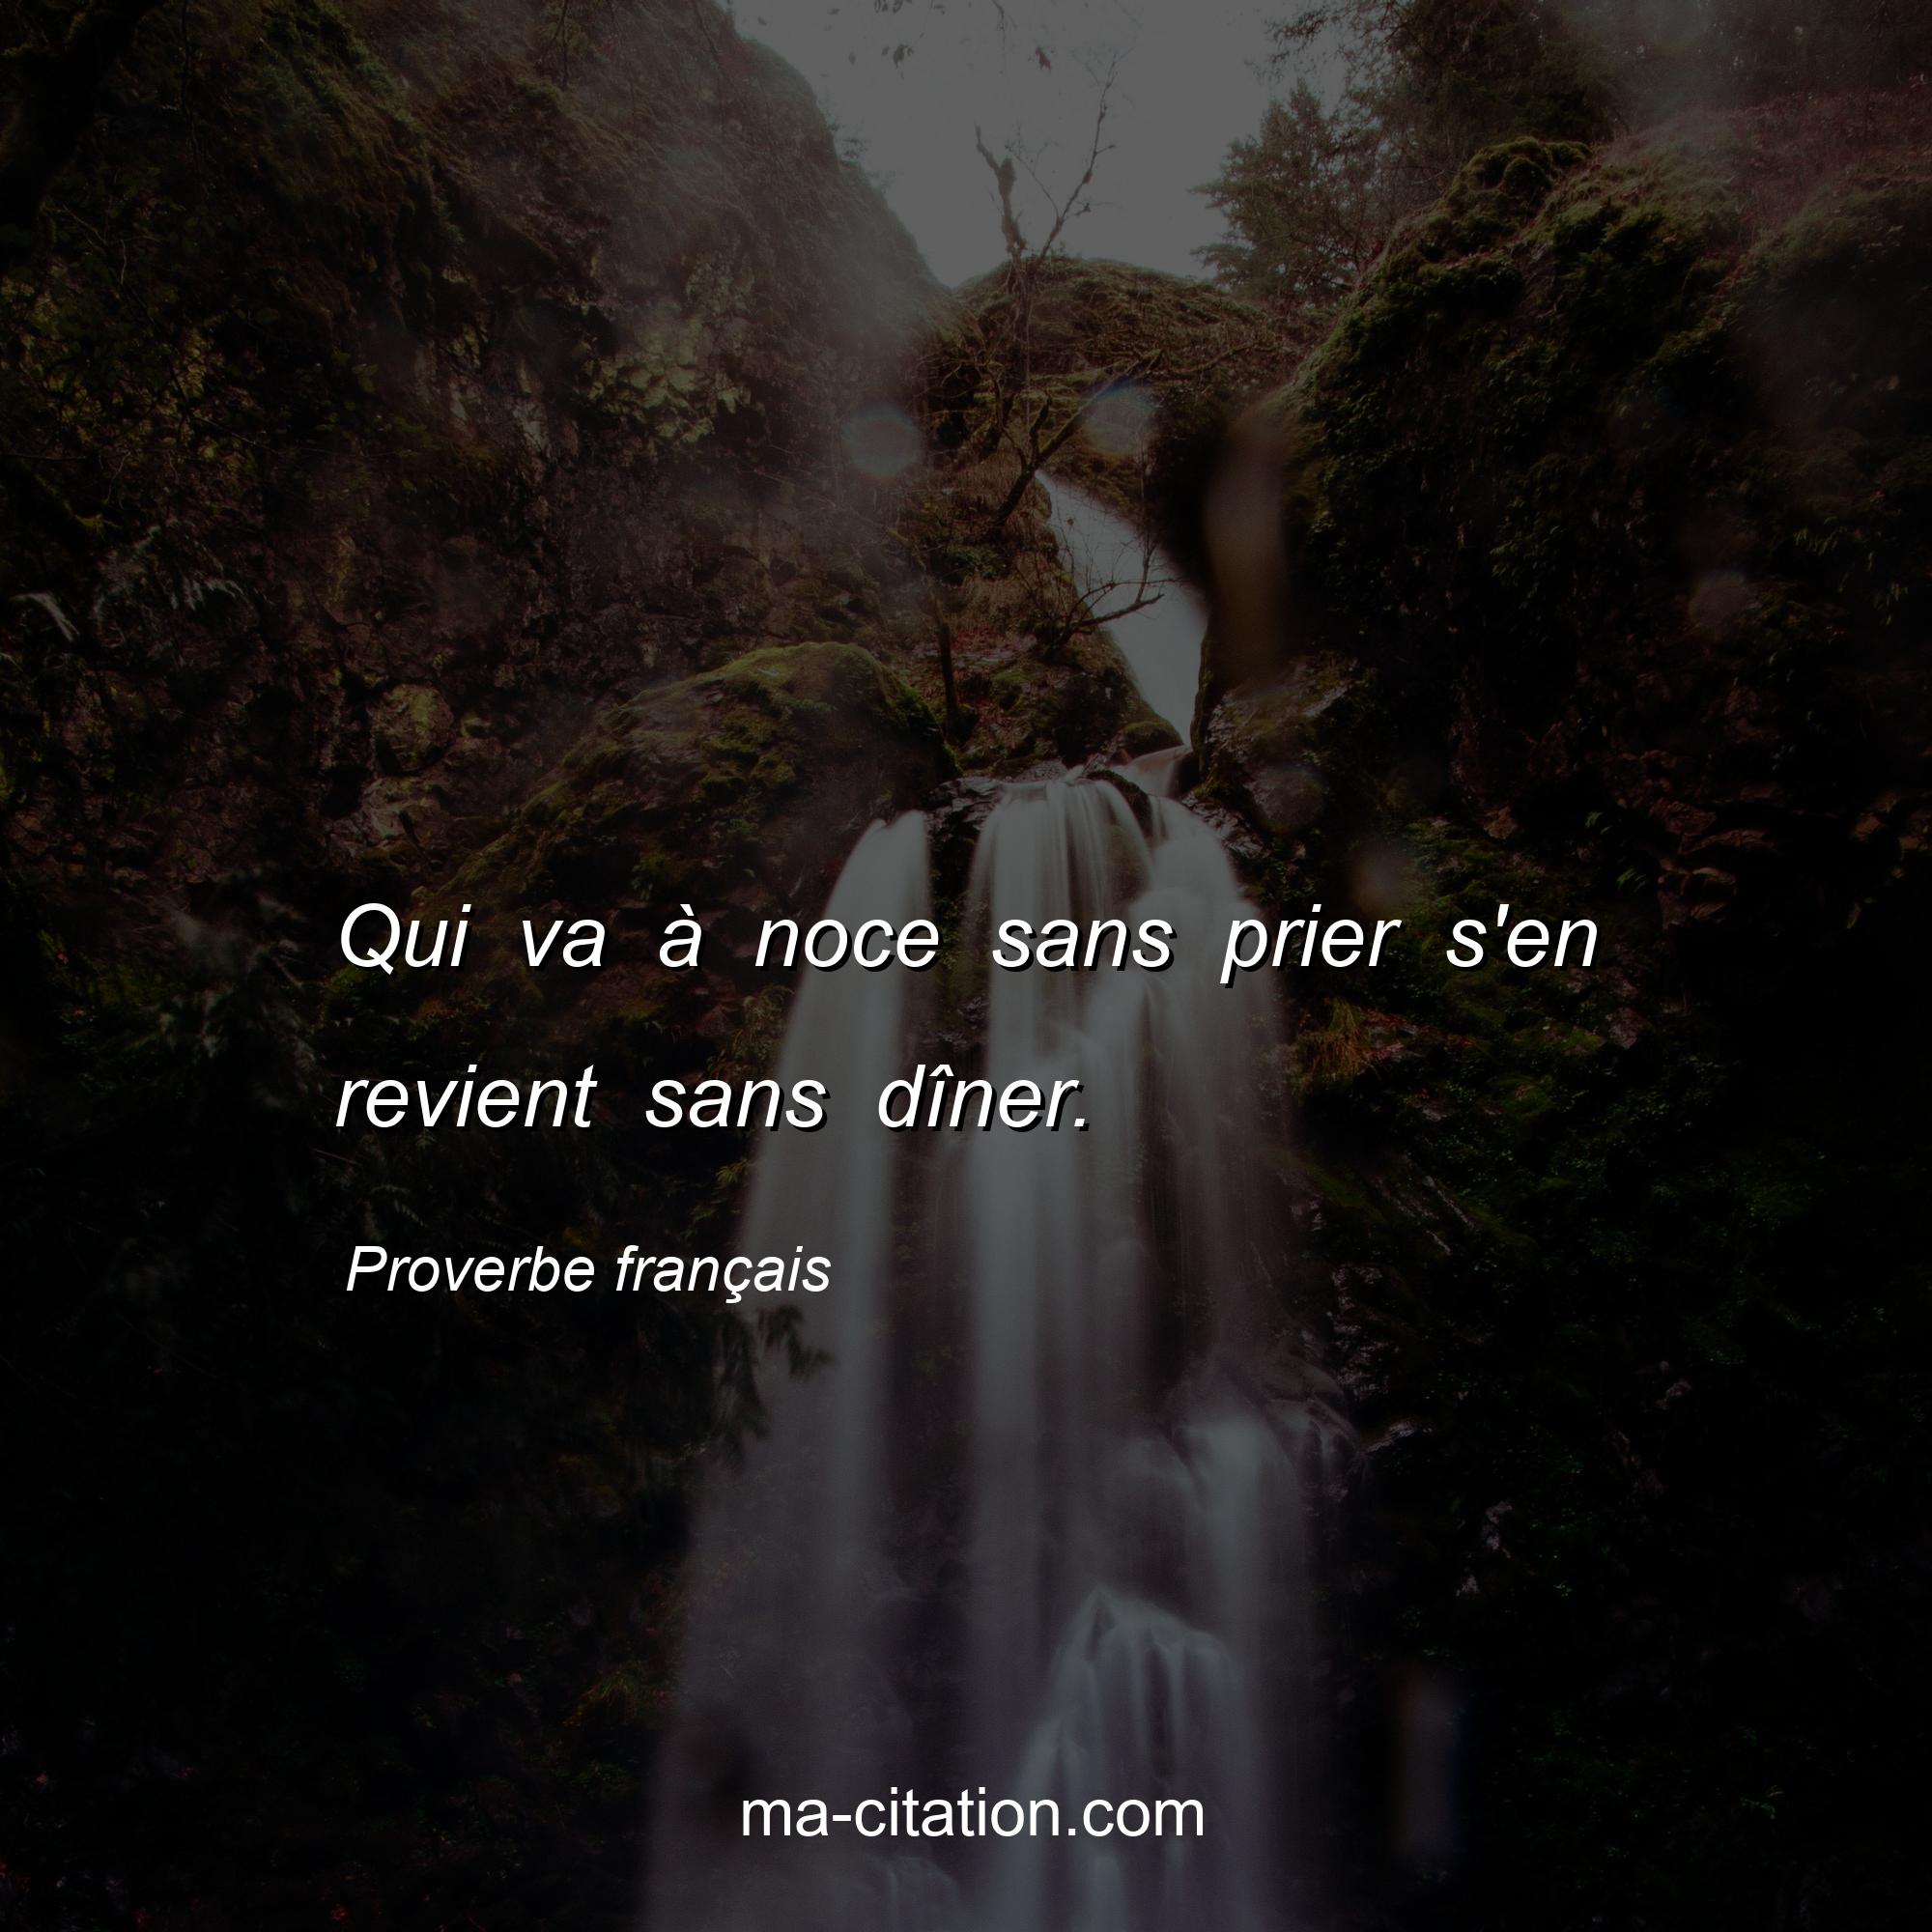 Proverbe français : Qui va à noce sans prier s'en revient sans dîner.